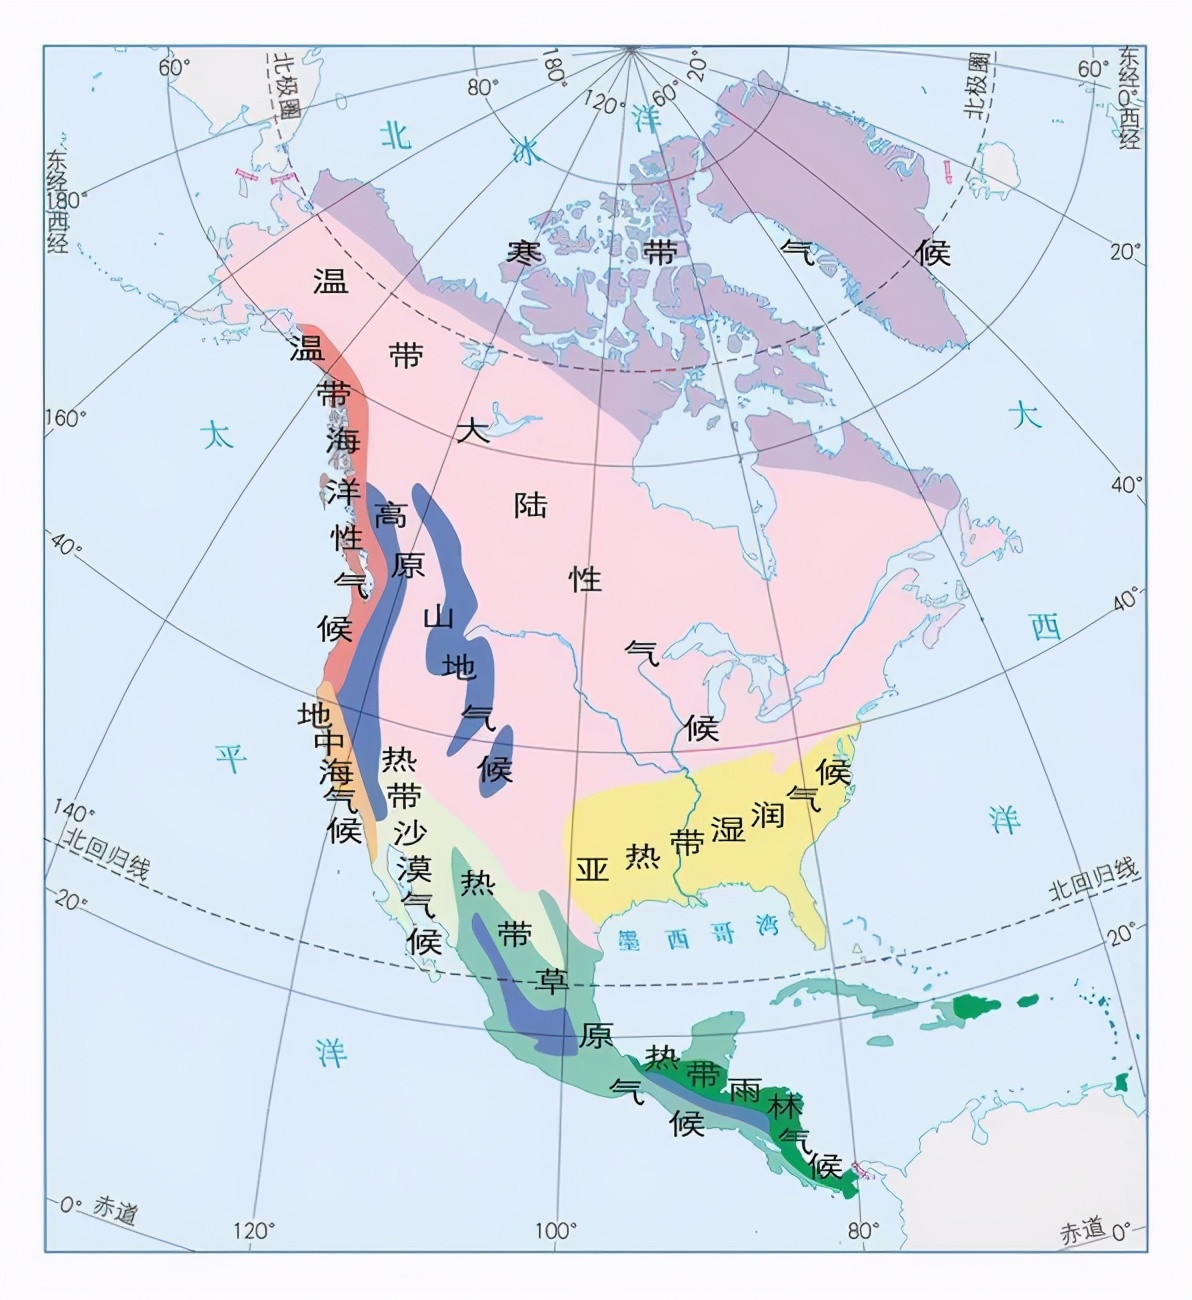 北美洲地形图高清 - 世界地理地图 - 地理教师网